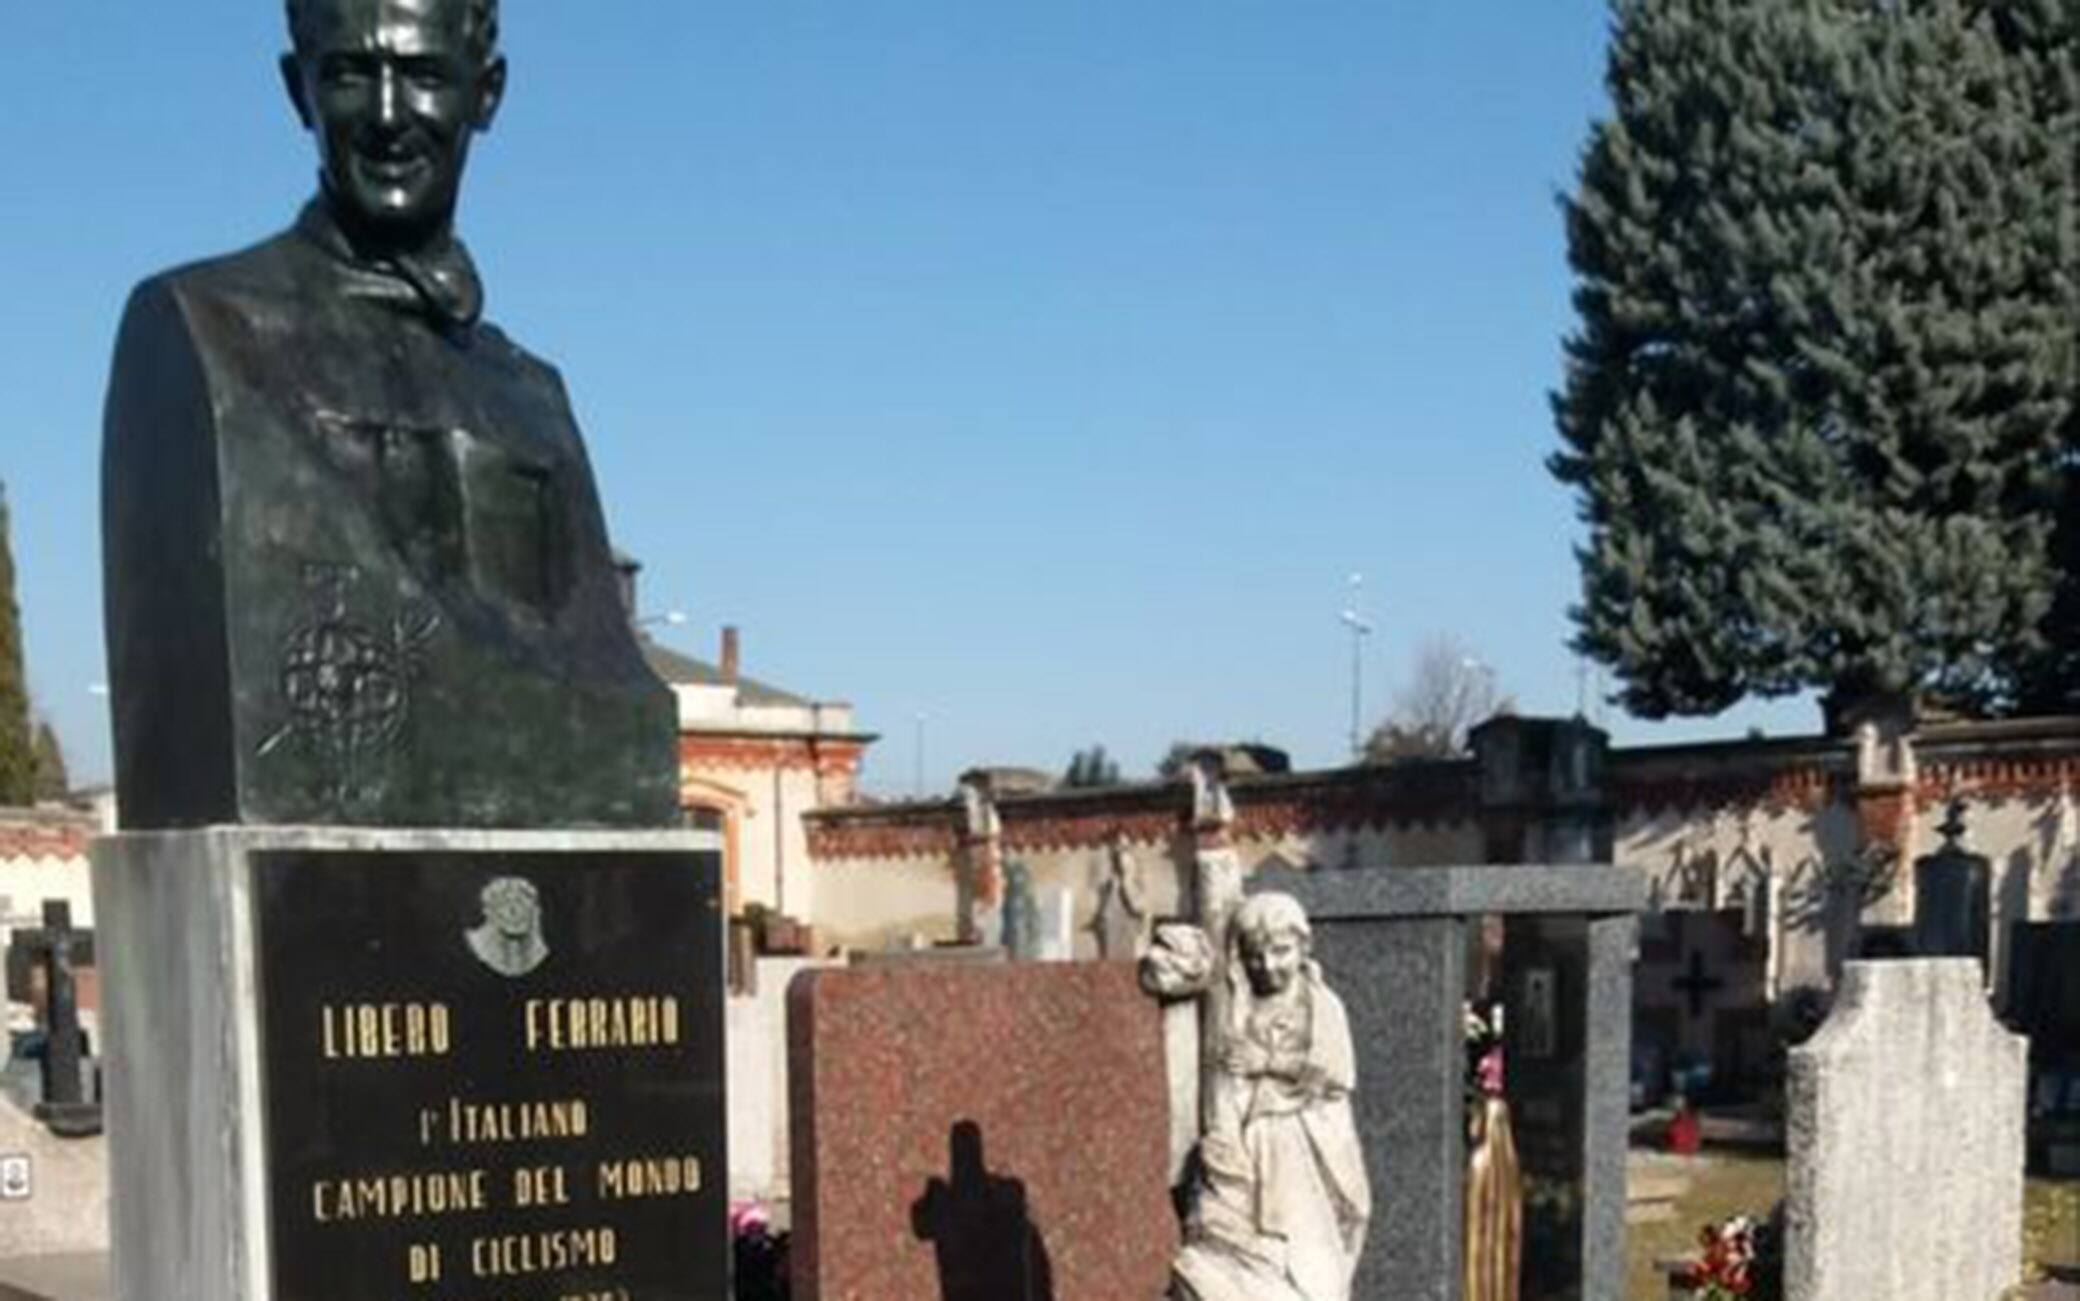 La statua di bronzo sulla tomba di Libero Ferrario nel cimitero di Parabiago